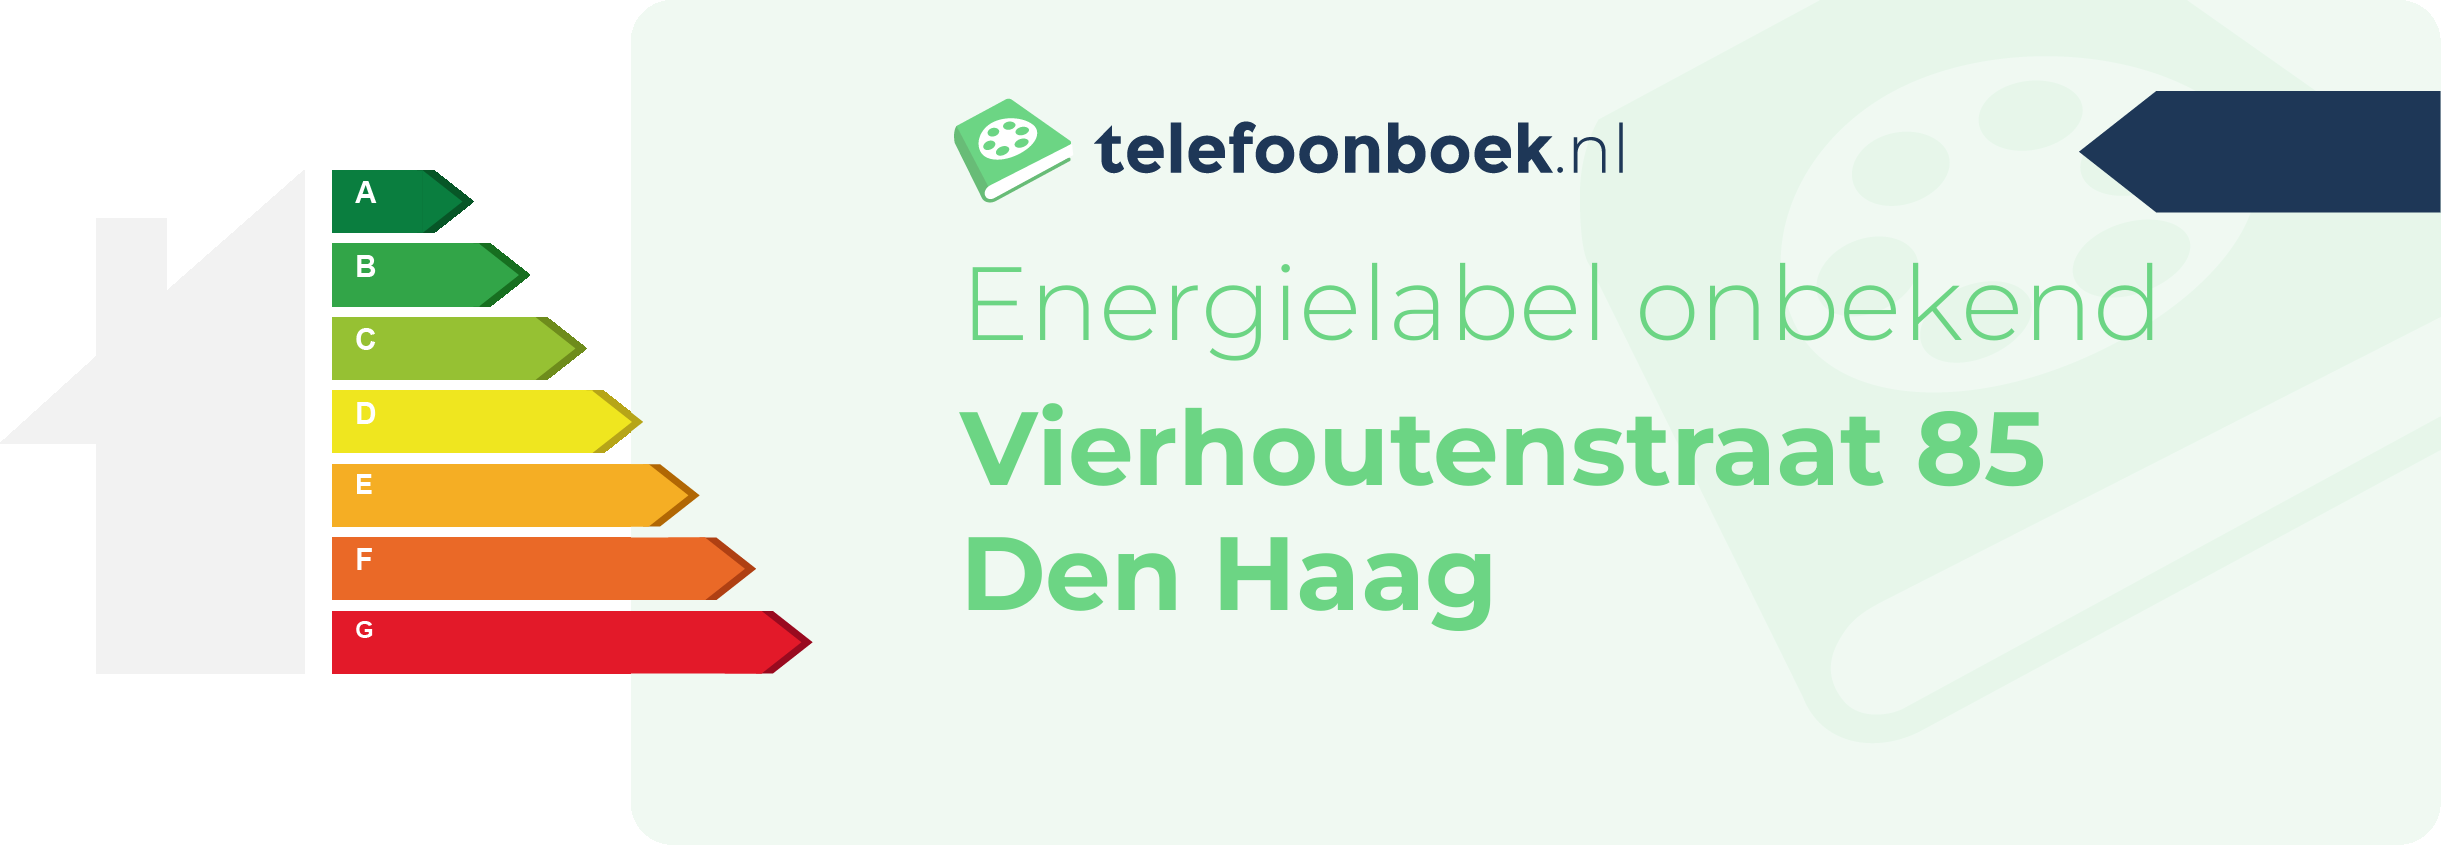 Energielabel Vierhoutenstraat 85 Den Haag